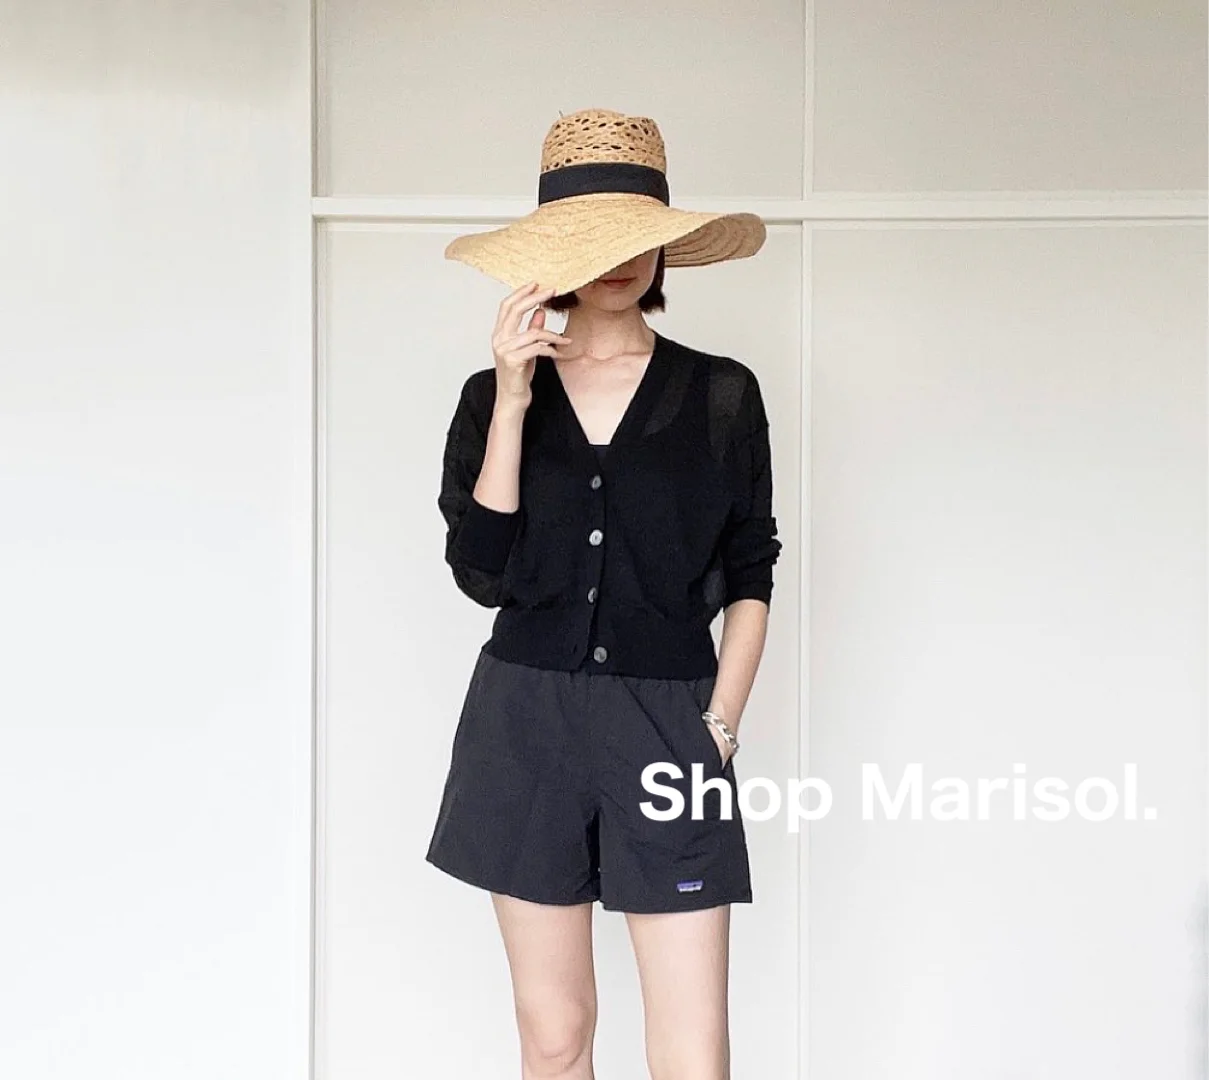 今欲しいのは透け感のあるコンパクトなカーディガン:Shop Marisol【40代 私のクローゼット】